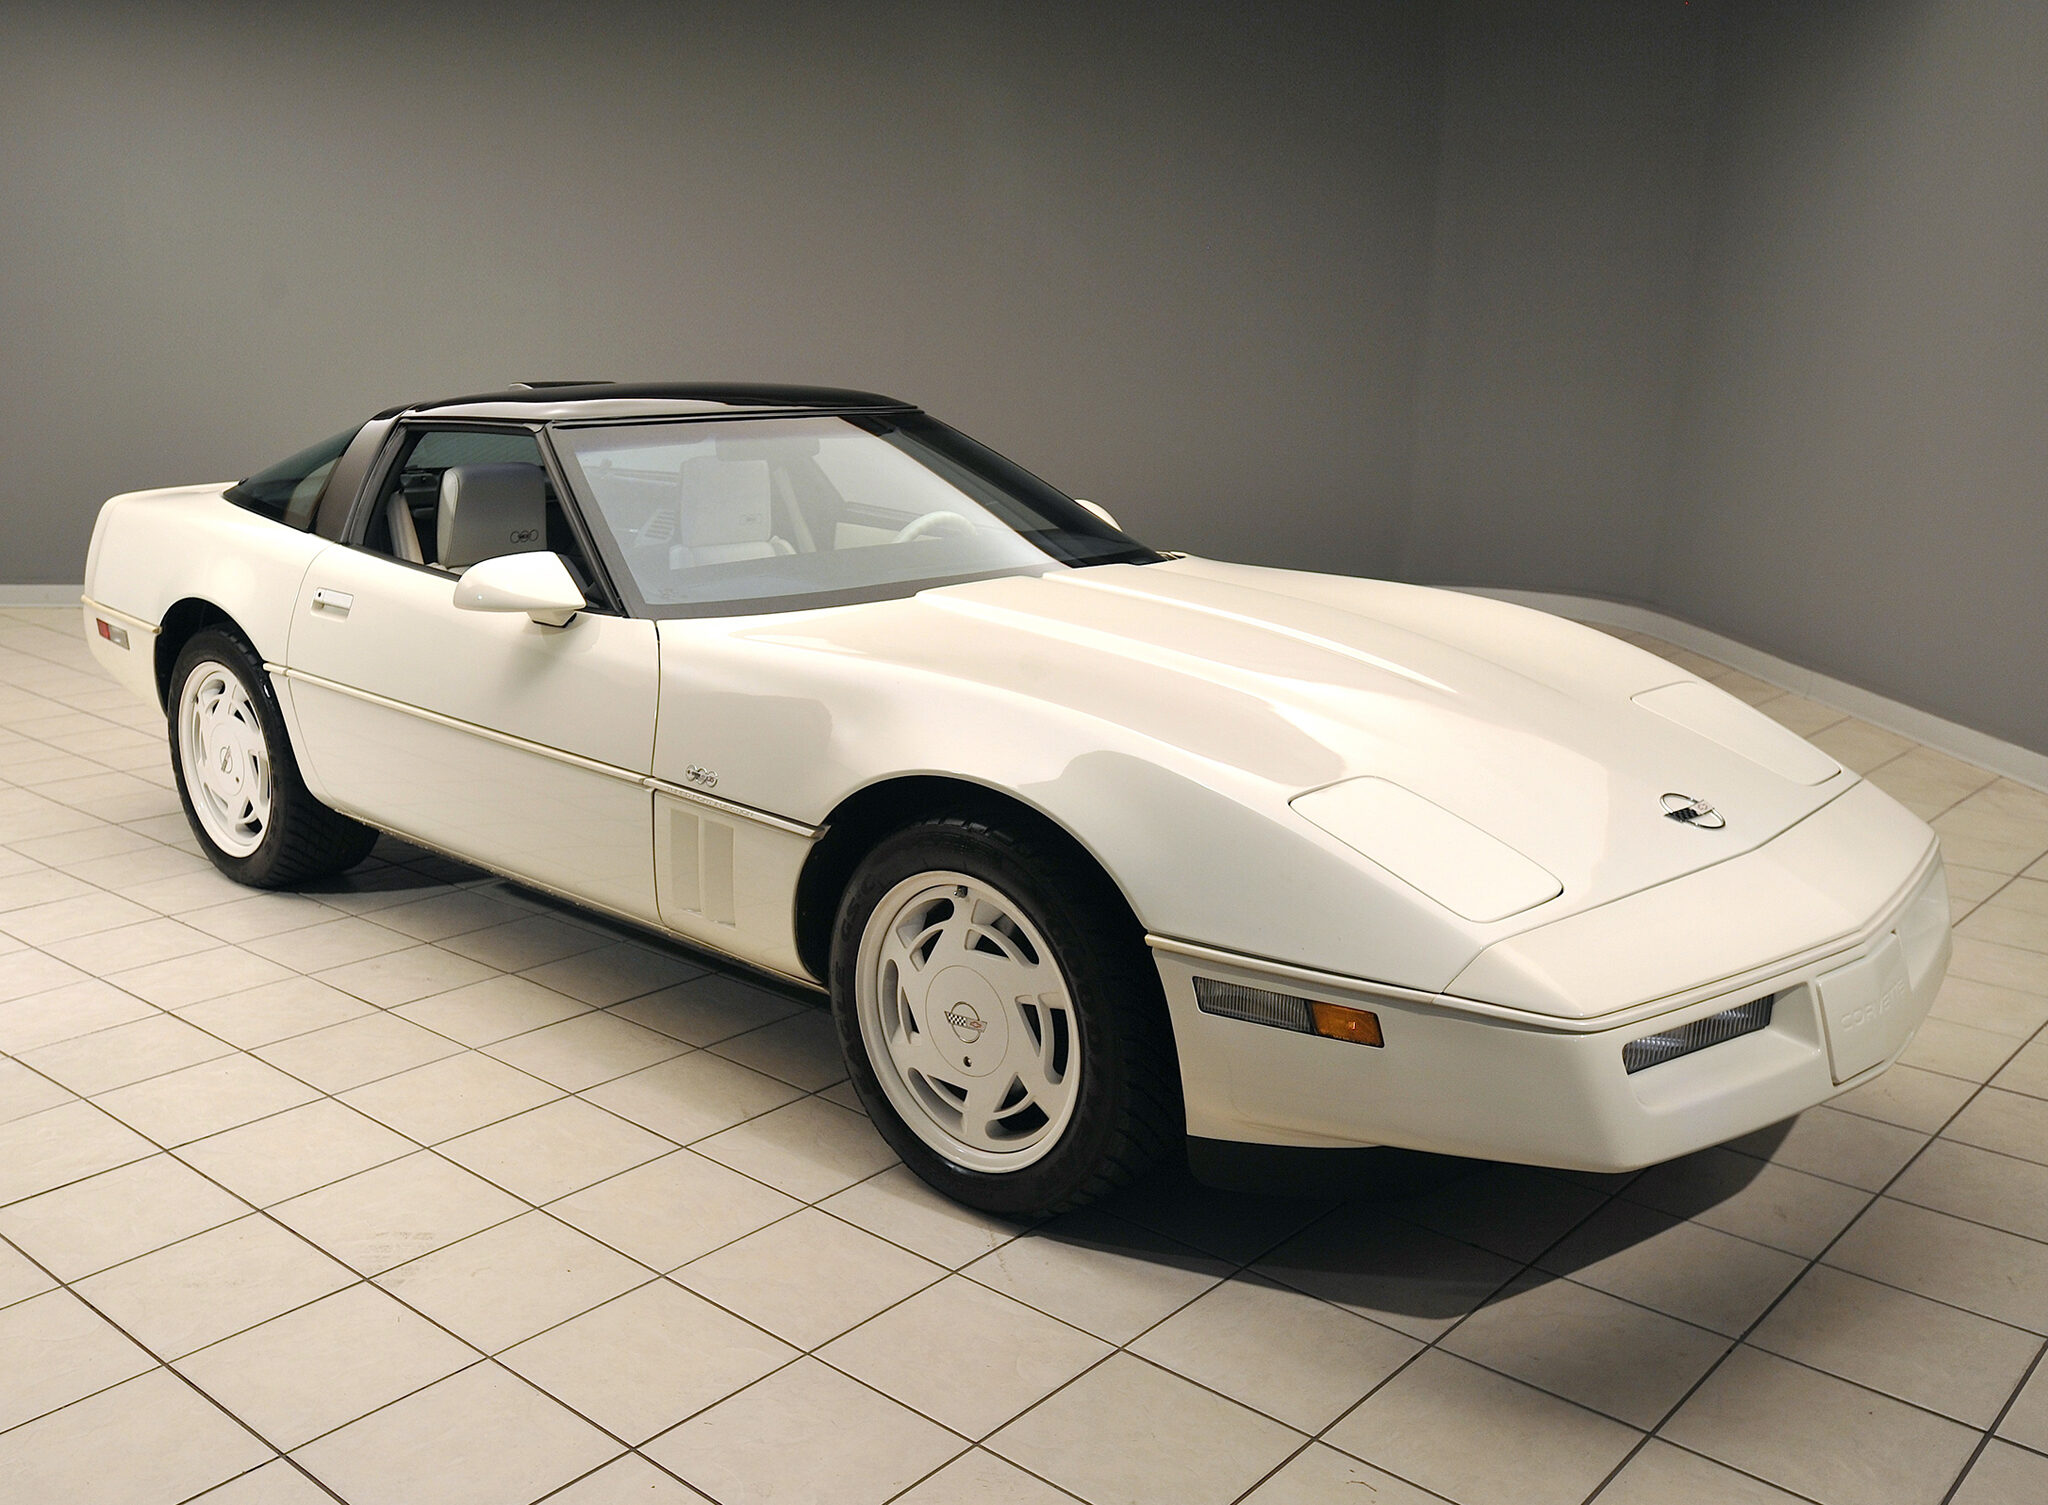 Corvette Of The Day: 1988 35th Anniversary Edition Corvette